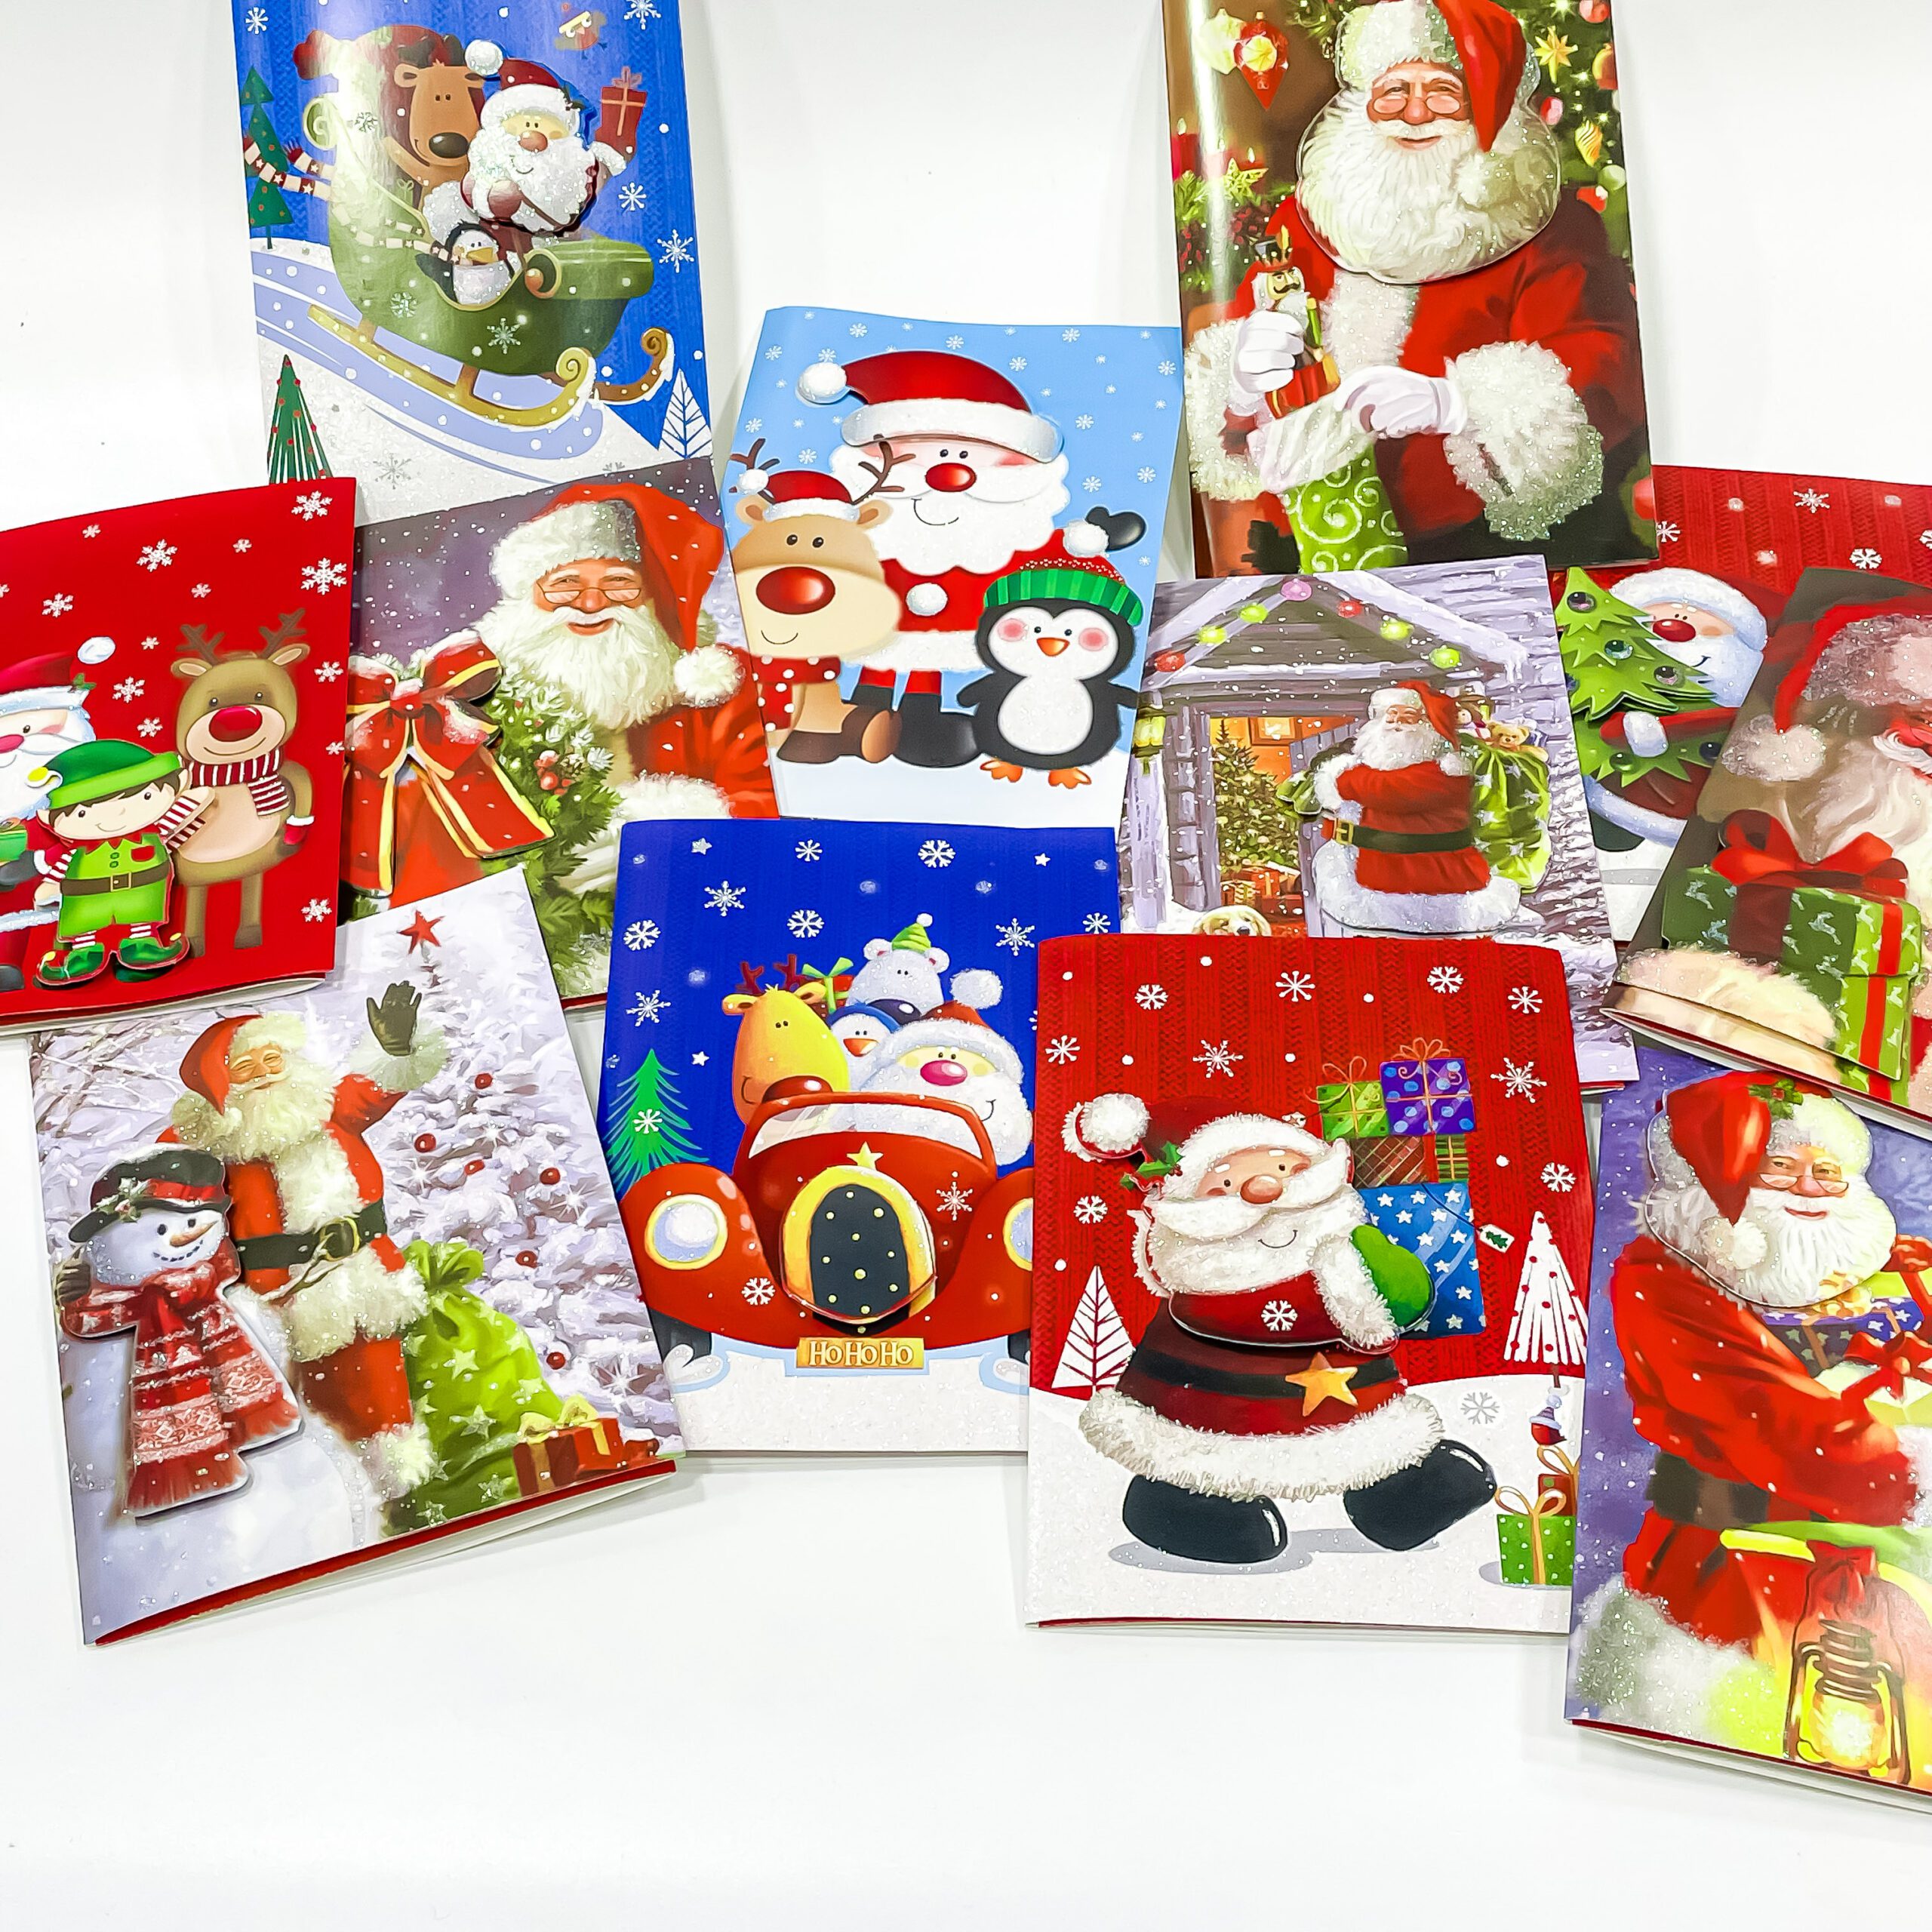 Christmas cards 12 varieties